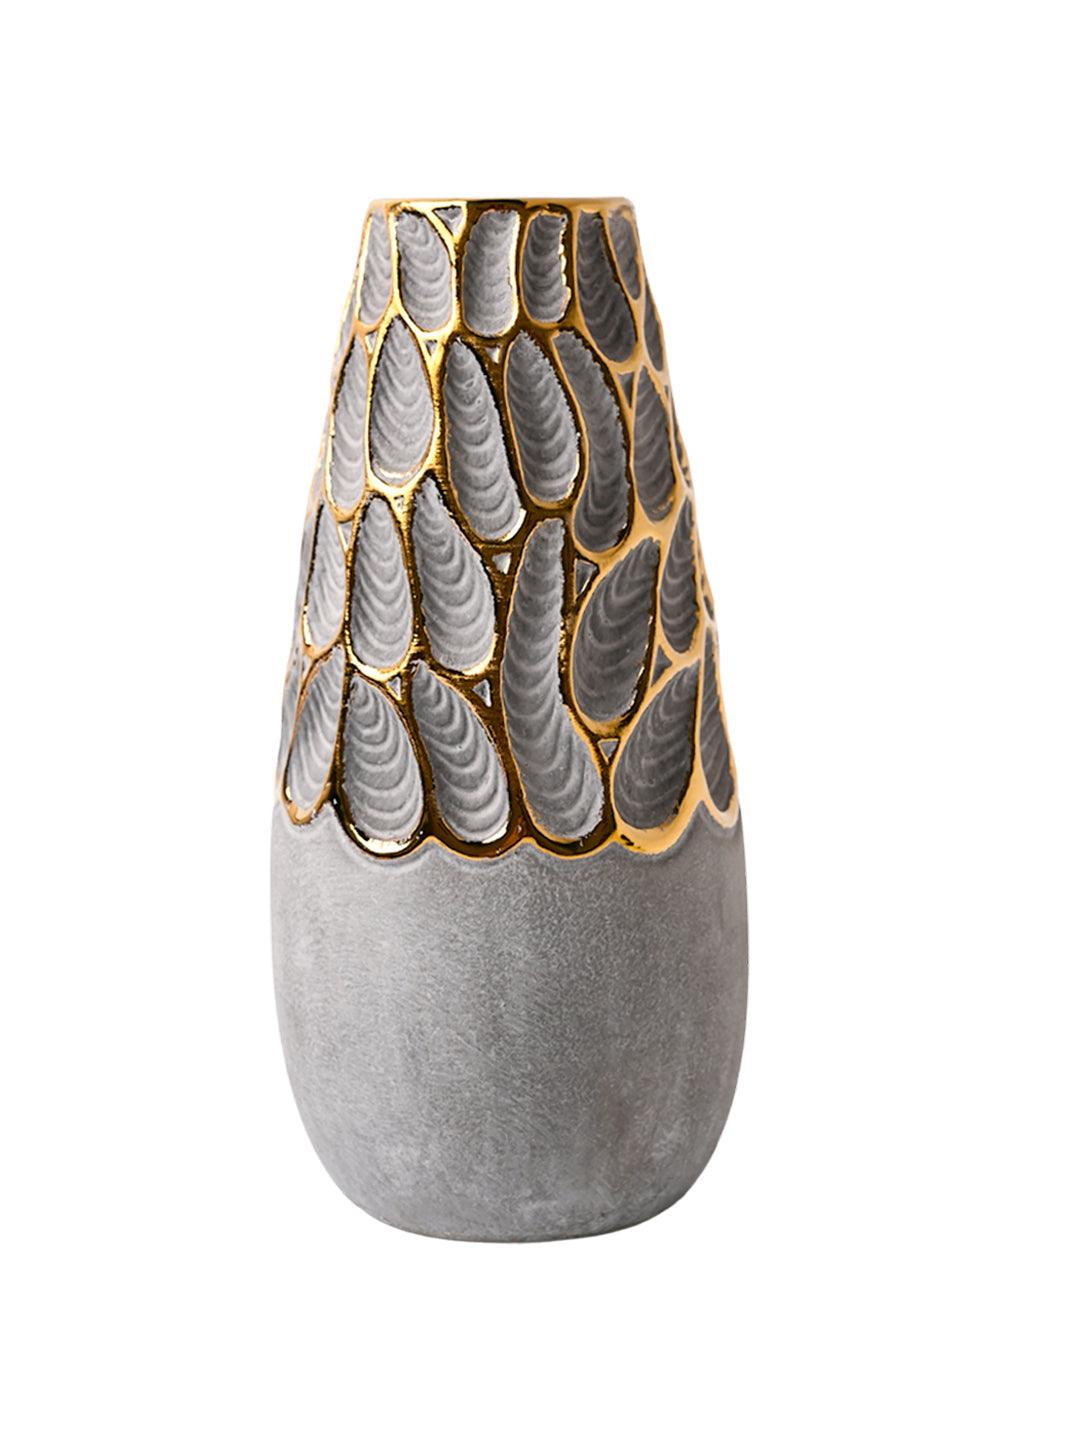 VON CASA Abstract Ceramic Vase - MARKET99